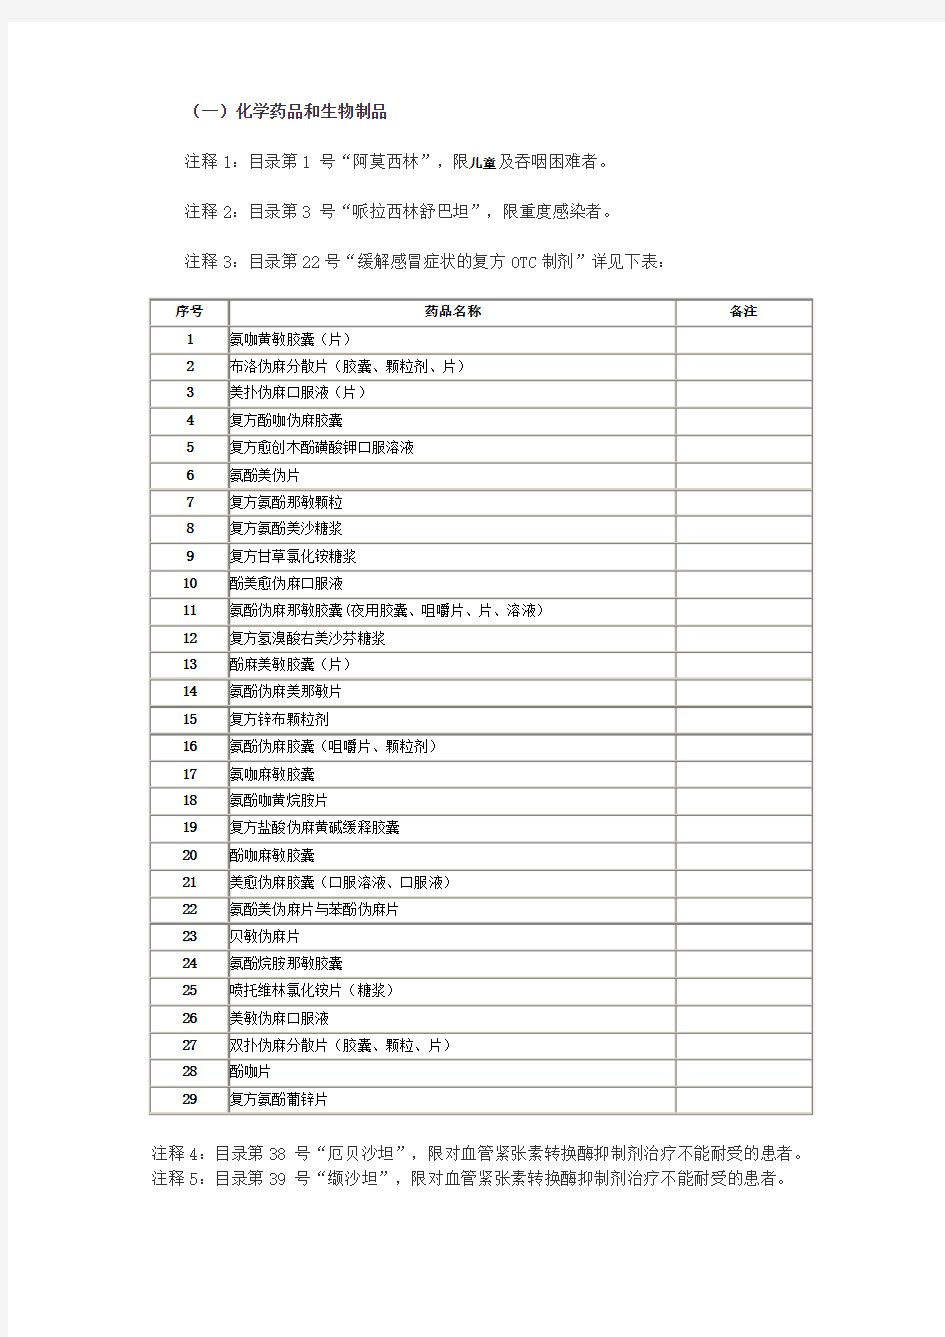 广东省2010年版基本药物增补品种目录及说明